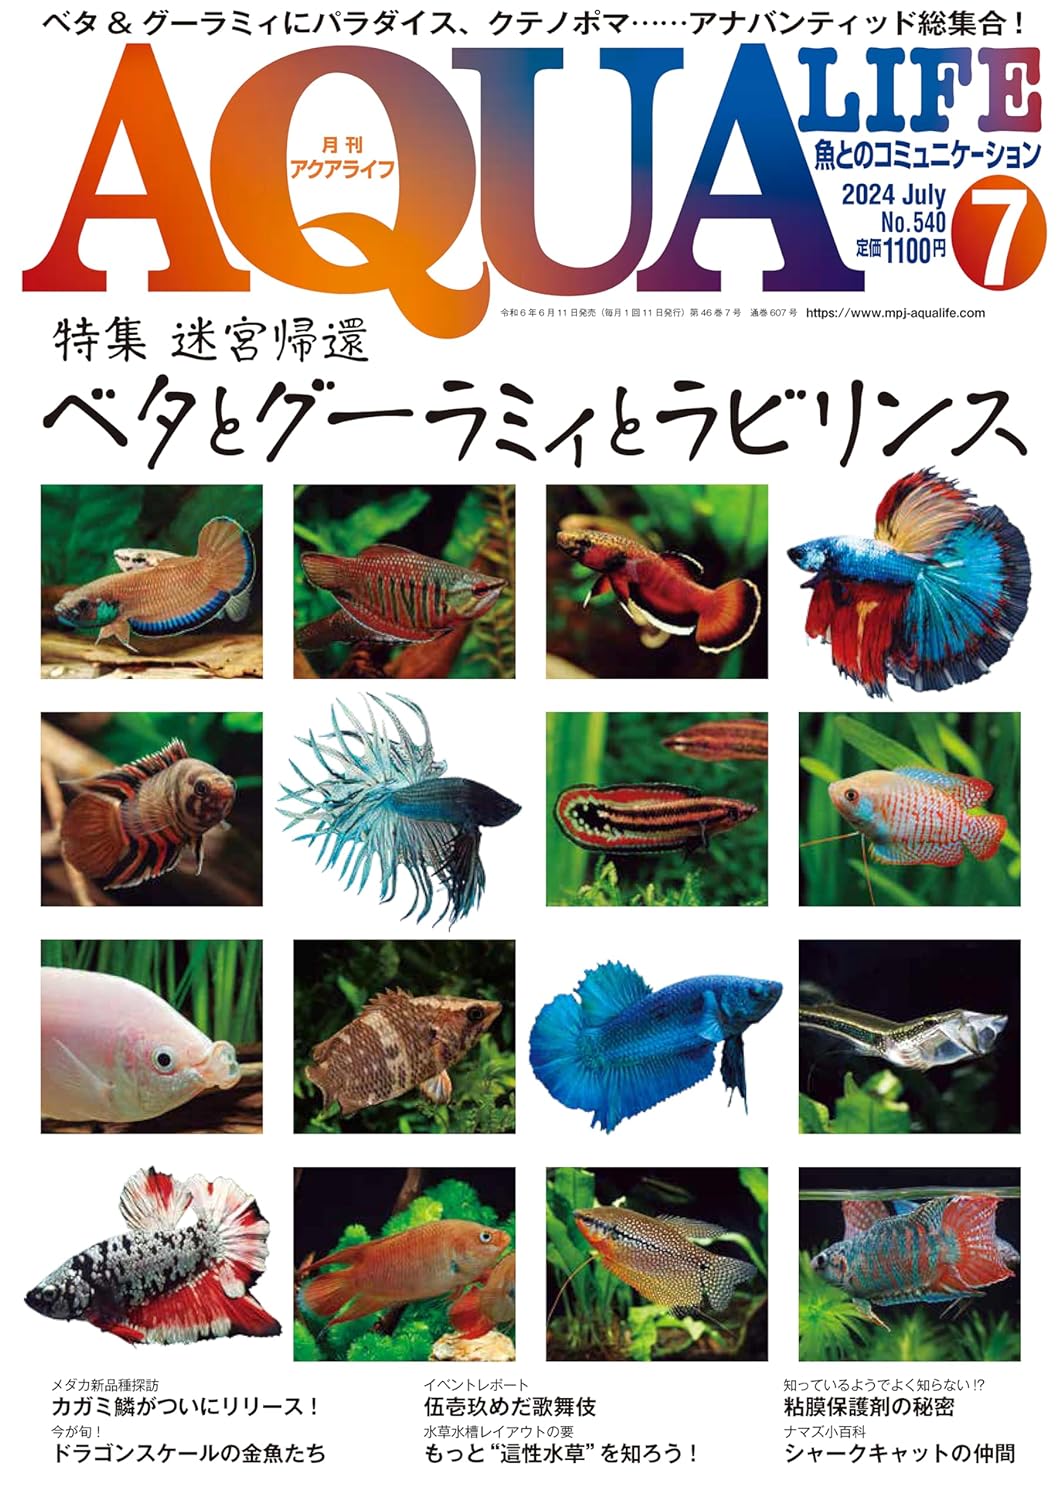 C09-044 月刊アクアライフ 2013 9 金魚ノ花道 アイスポットシクリッド 巻貝&二枚貝 エムビージェー